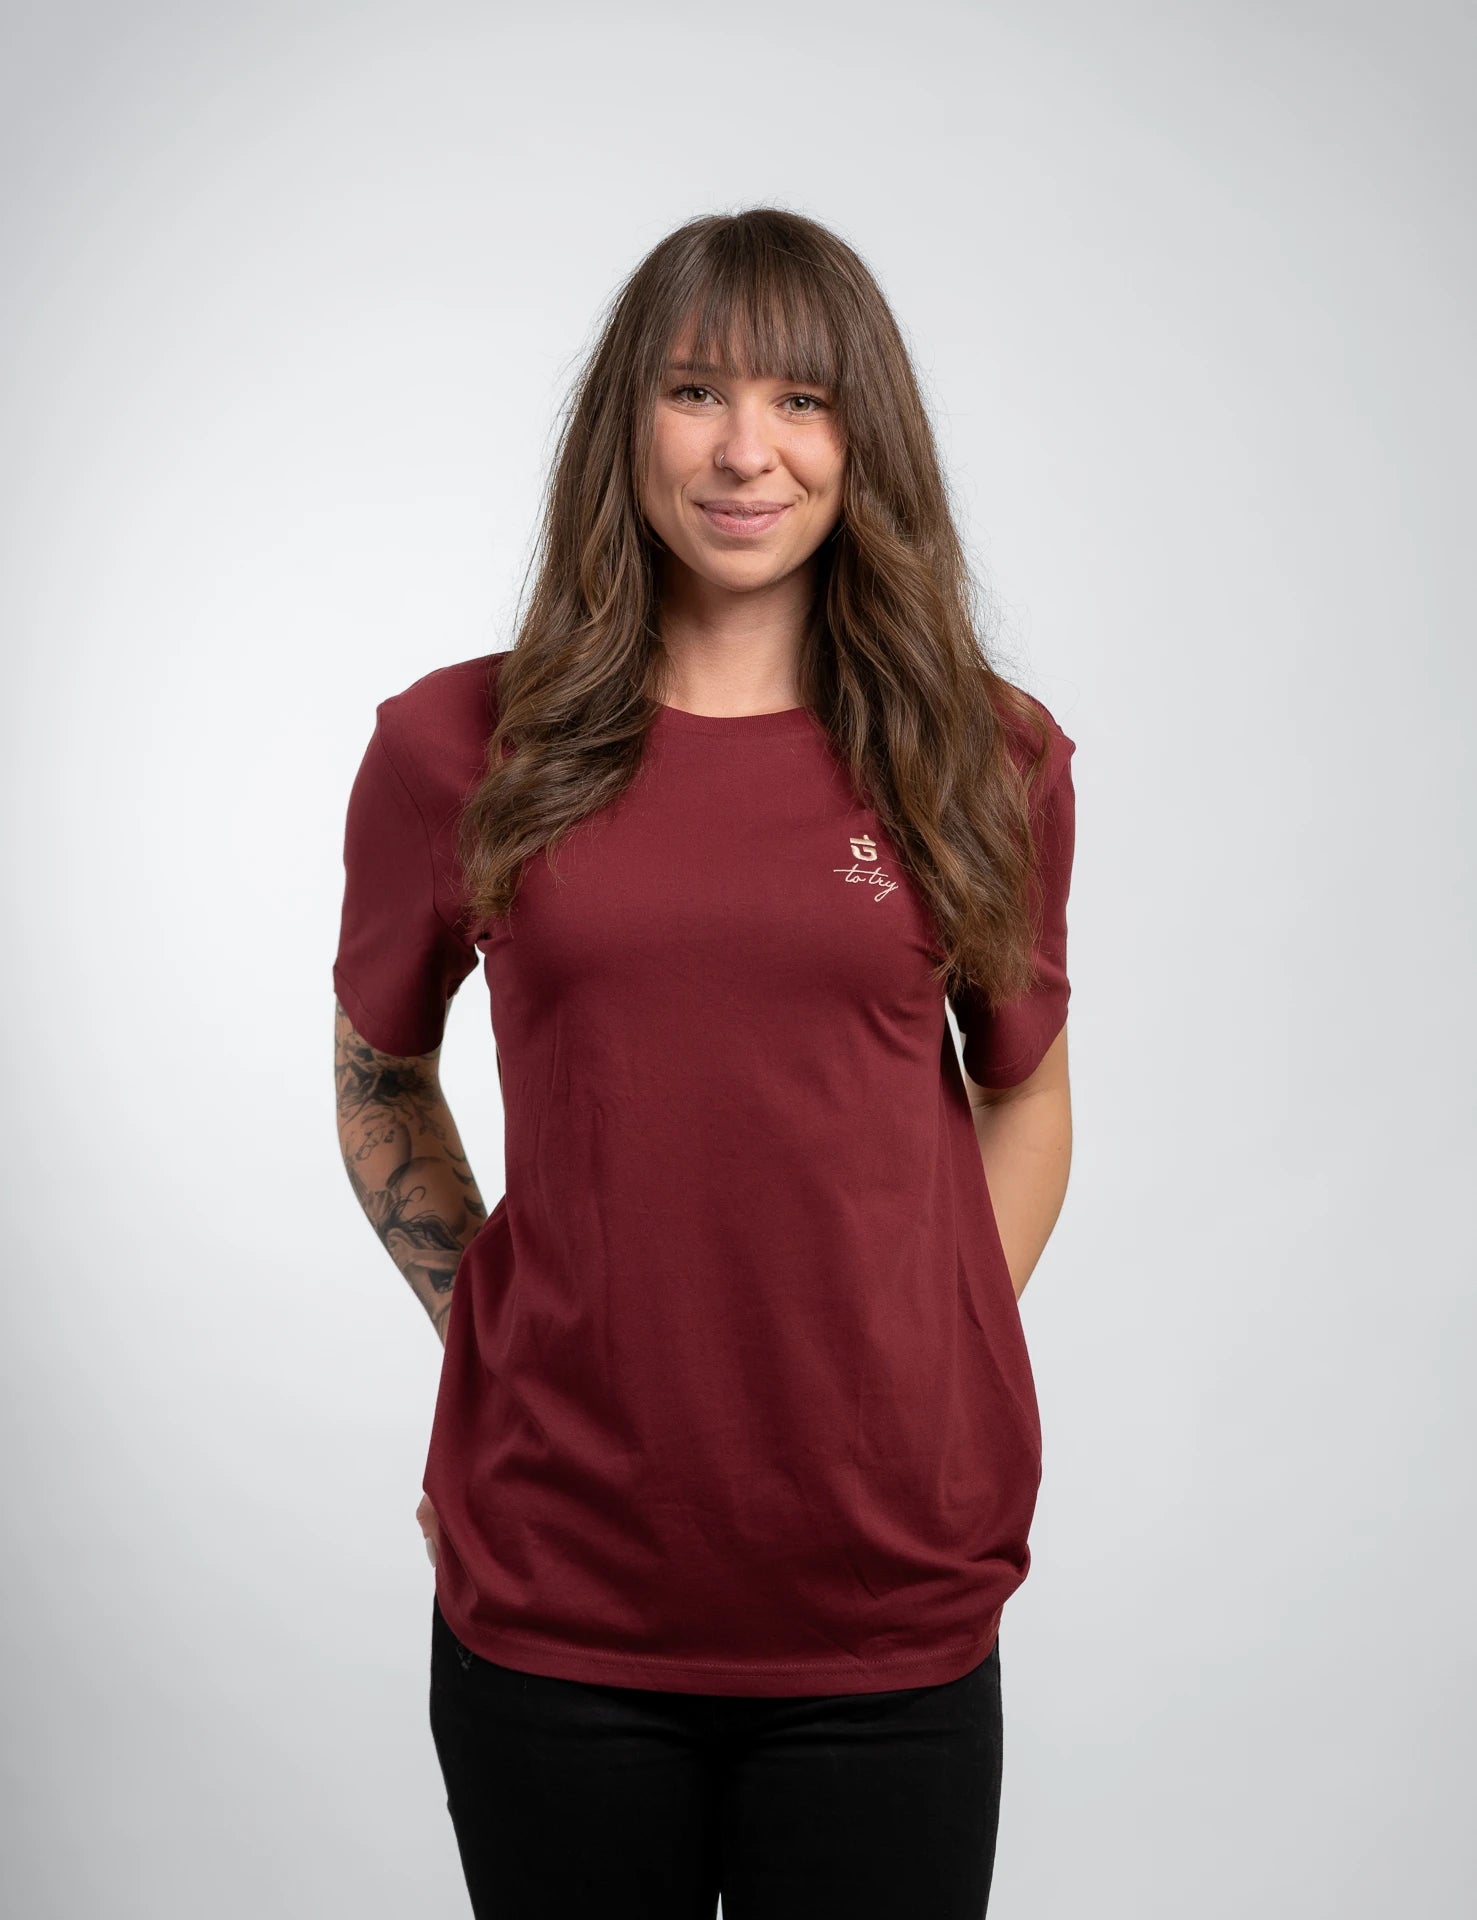 Ruby classic Bio-Baumwolle T-Shirt mit beigen, 1d totry Stick auf der Brust.